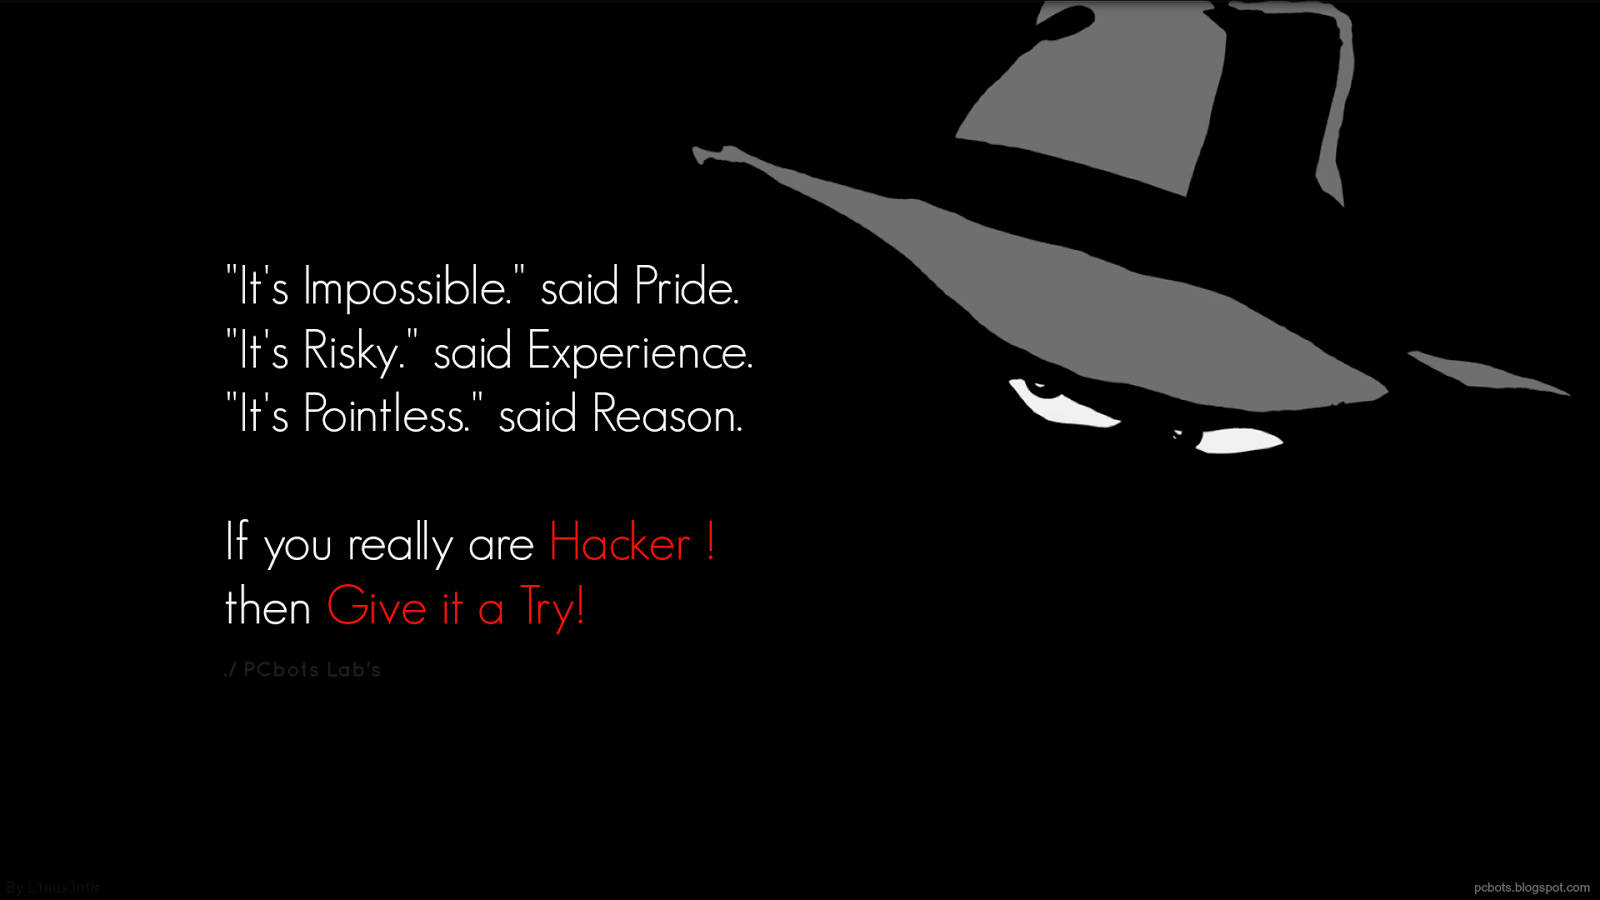 Black Hat Hacker